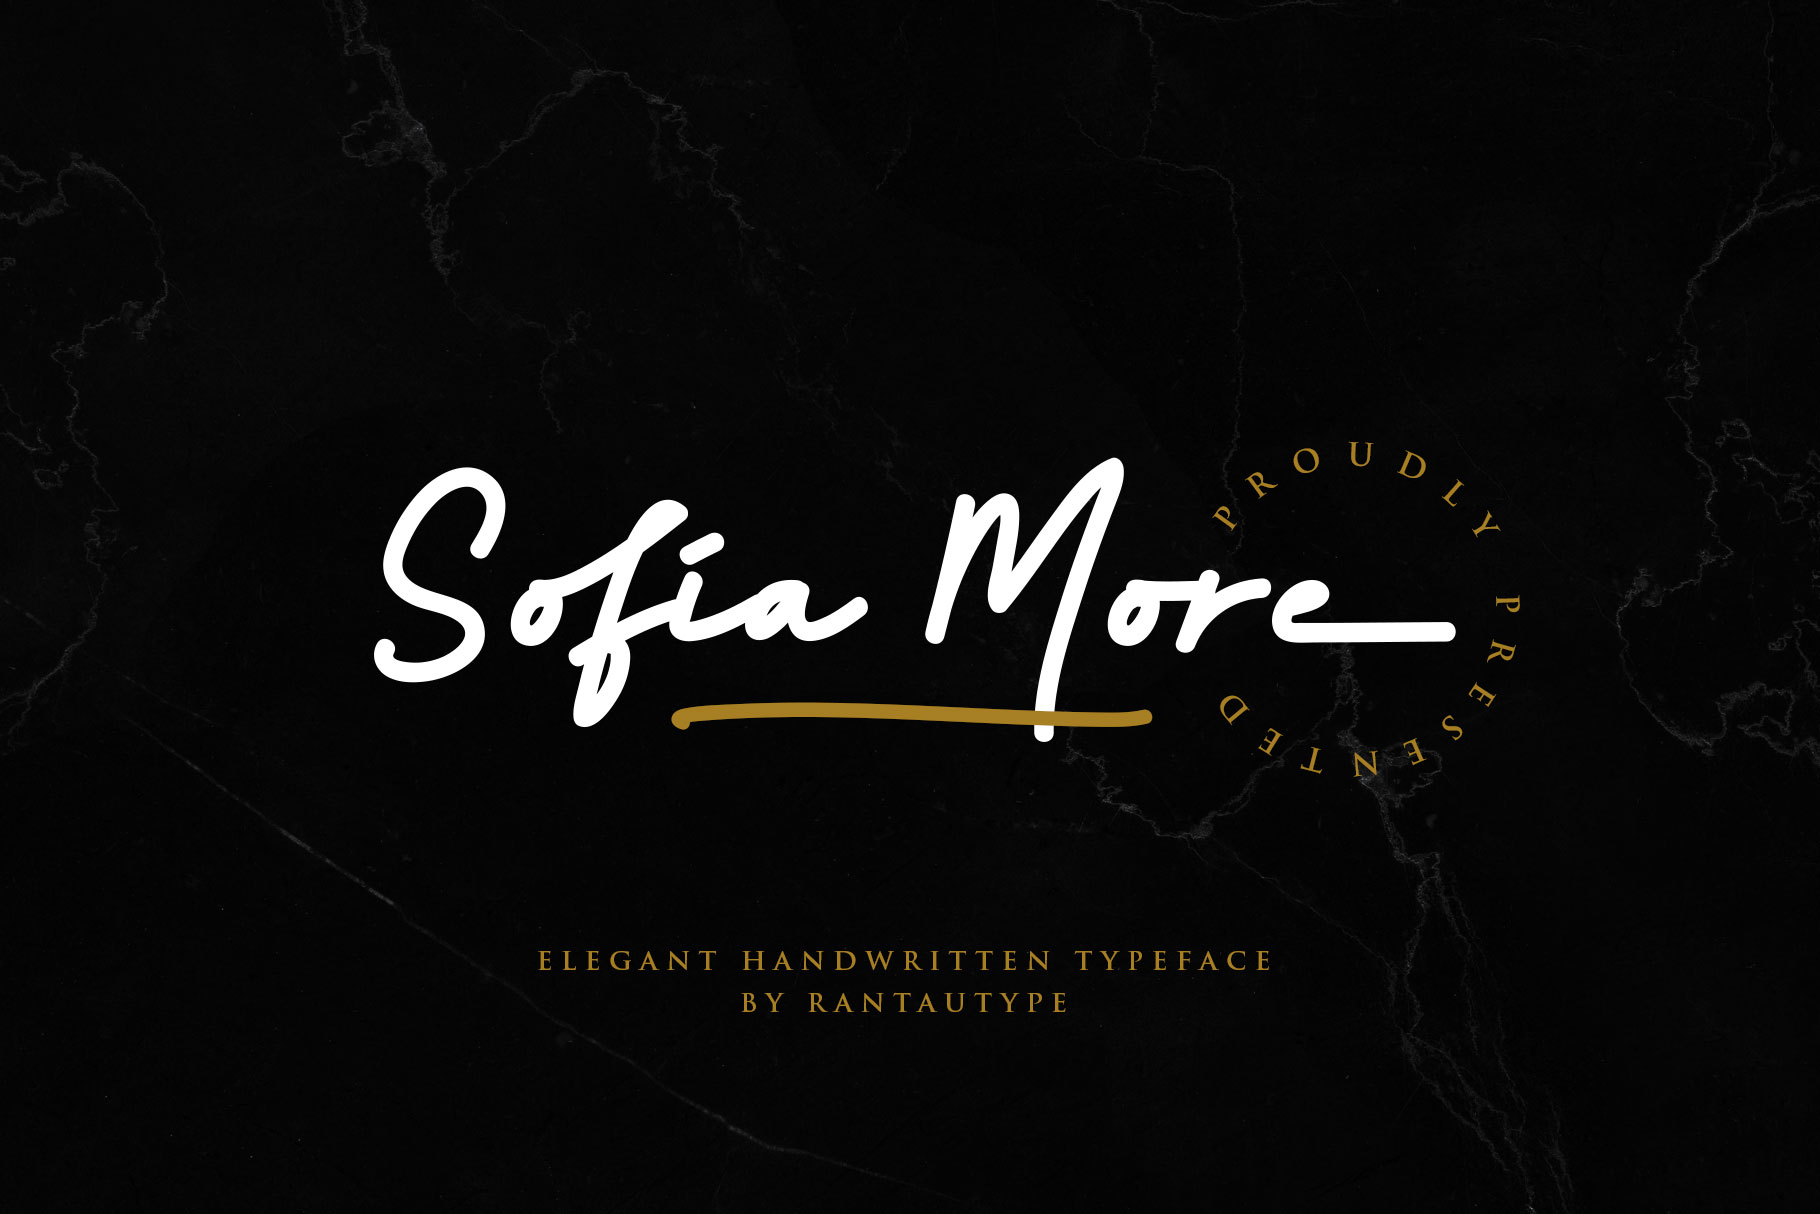 Sofia More